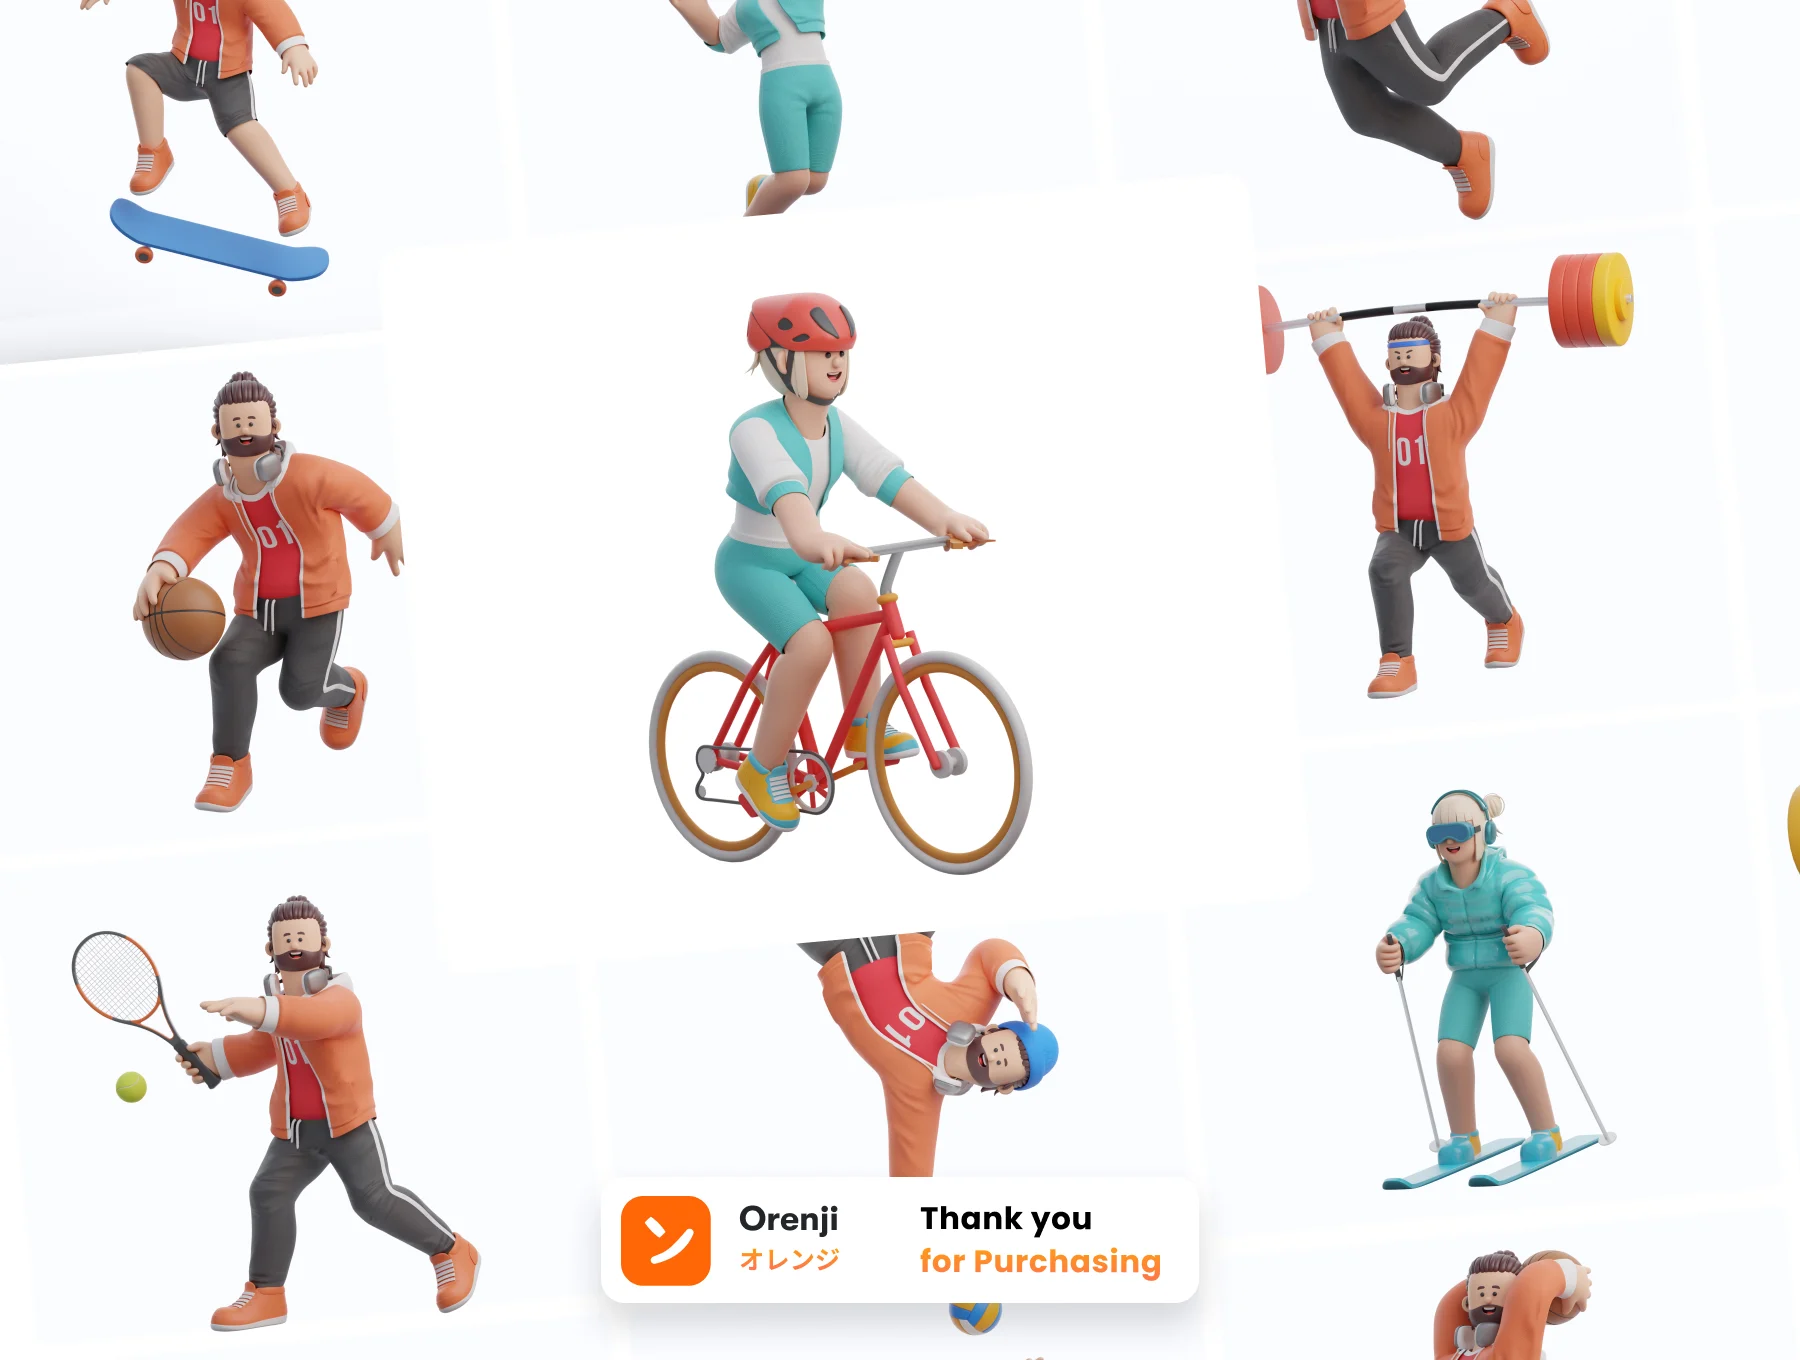 体育运动3D人物角色模型16款 3D Character Sports Pack .blender .png-3D/图标-到位啦UI